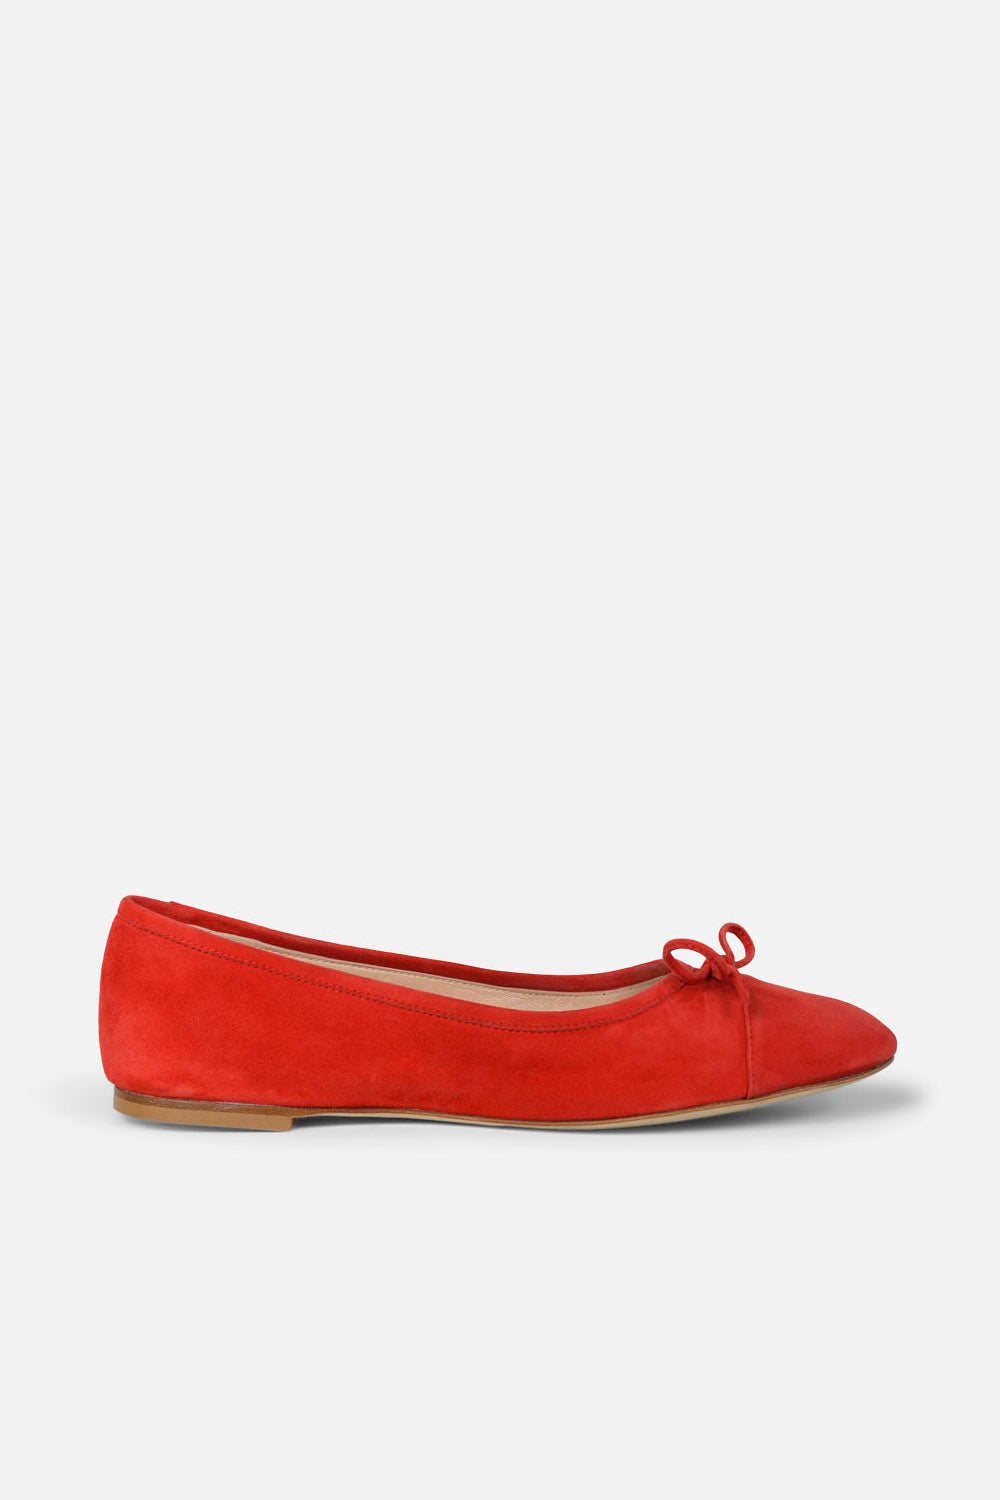 Balette Cam Shoe - rouge